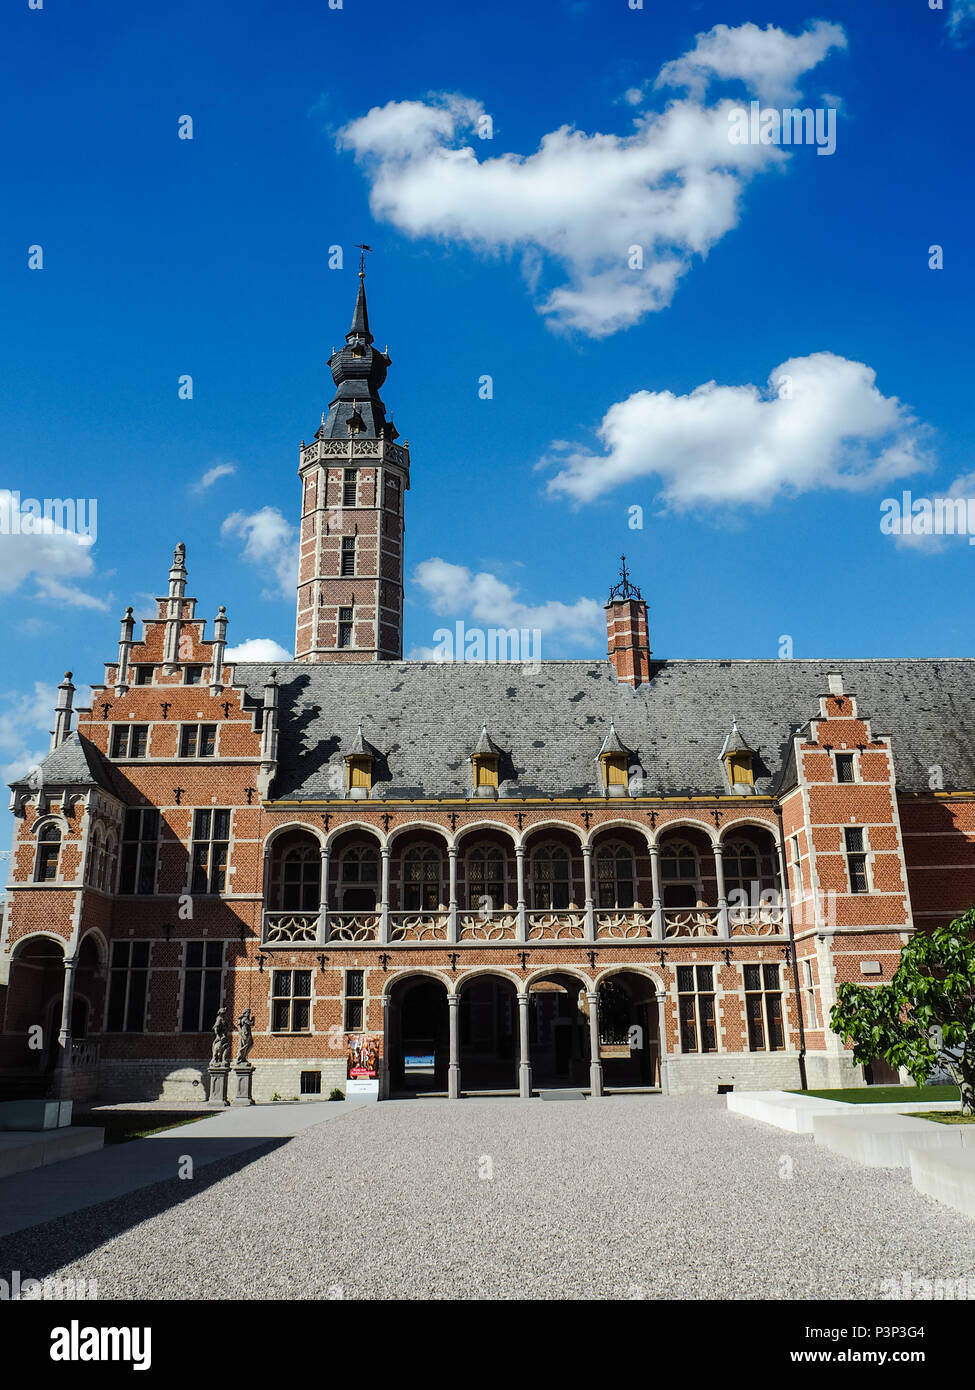 Newly renovated museum Hof van Buysleyden focussing on Burgundian court culture, located in Mechelen, Belgium Stock Photo